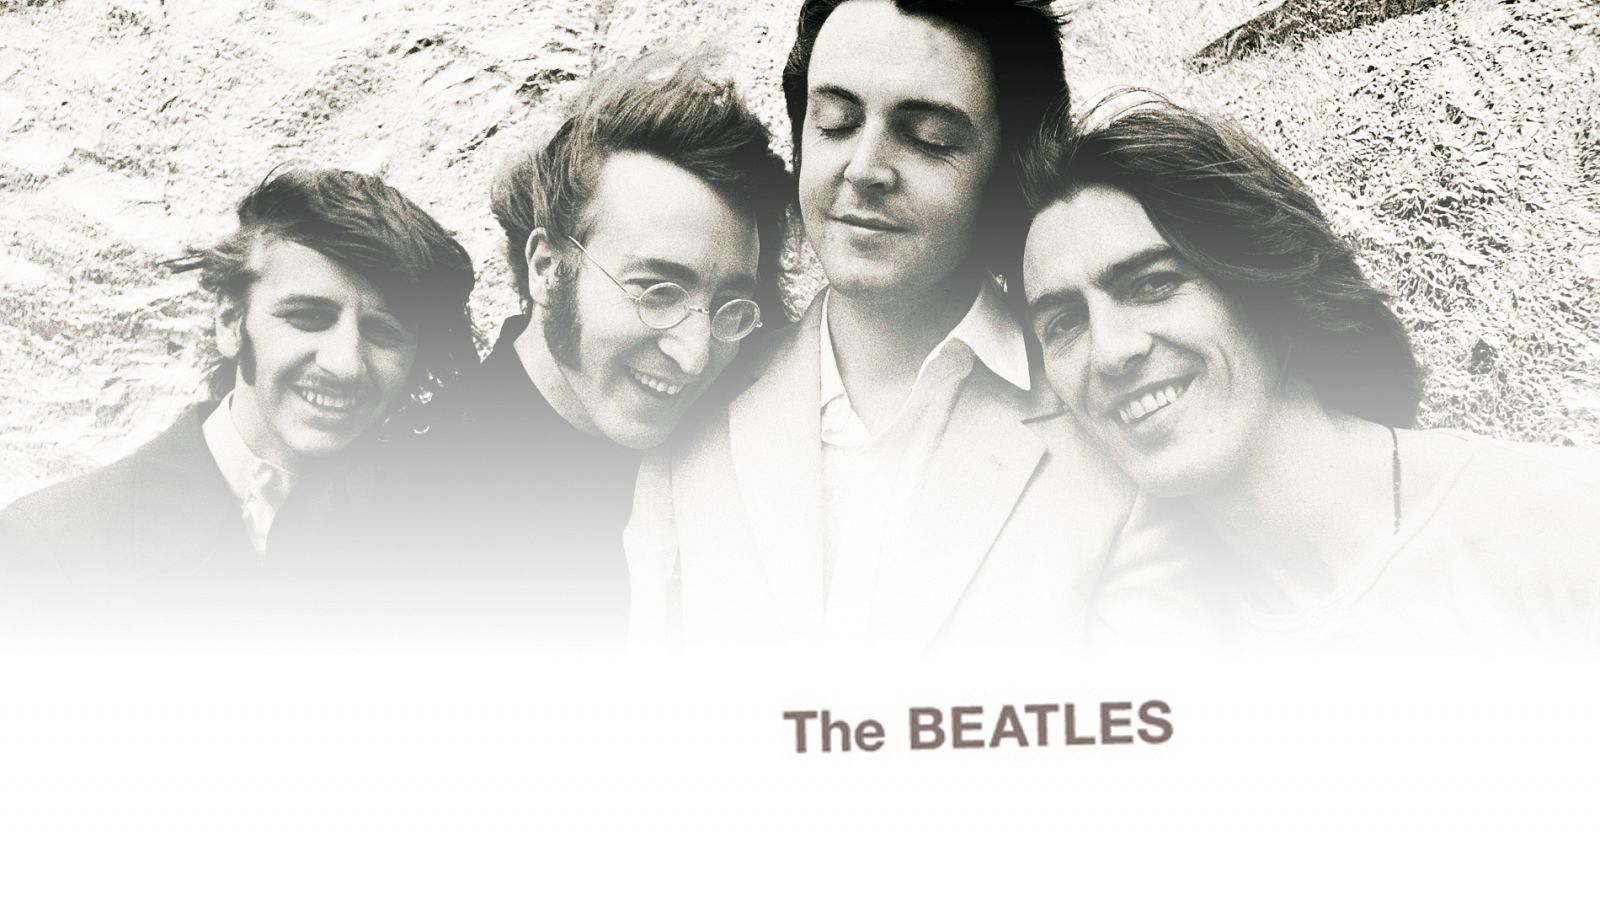 Composición de una imagen de los Beatles sobre la portada del 'White Album'